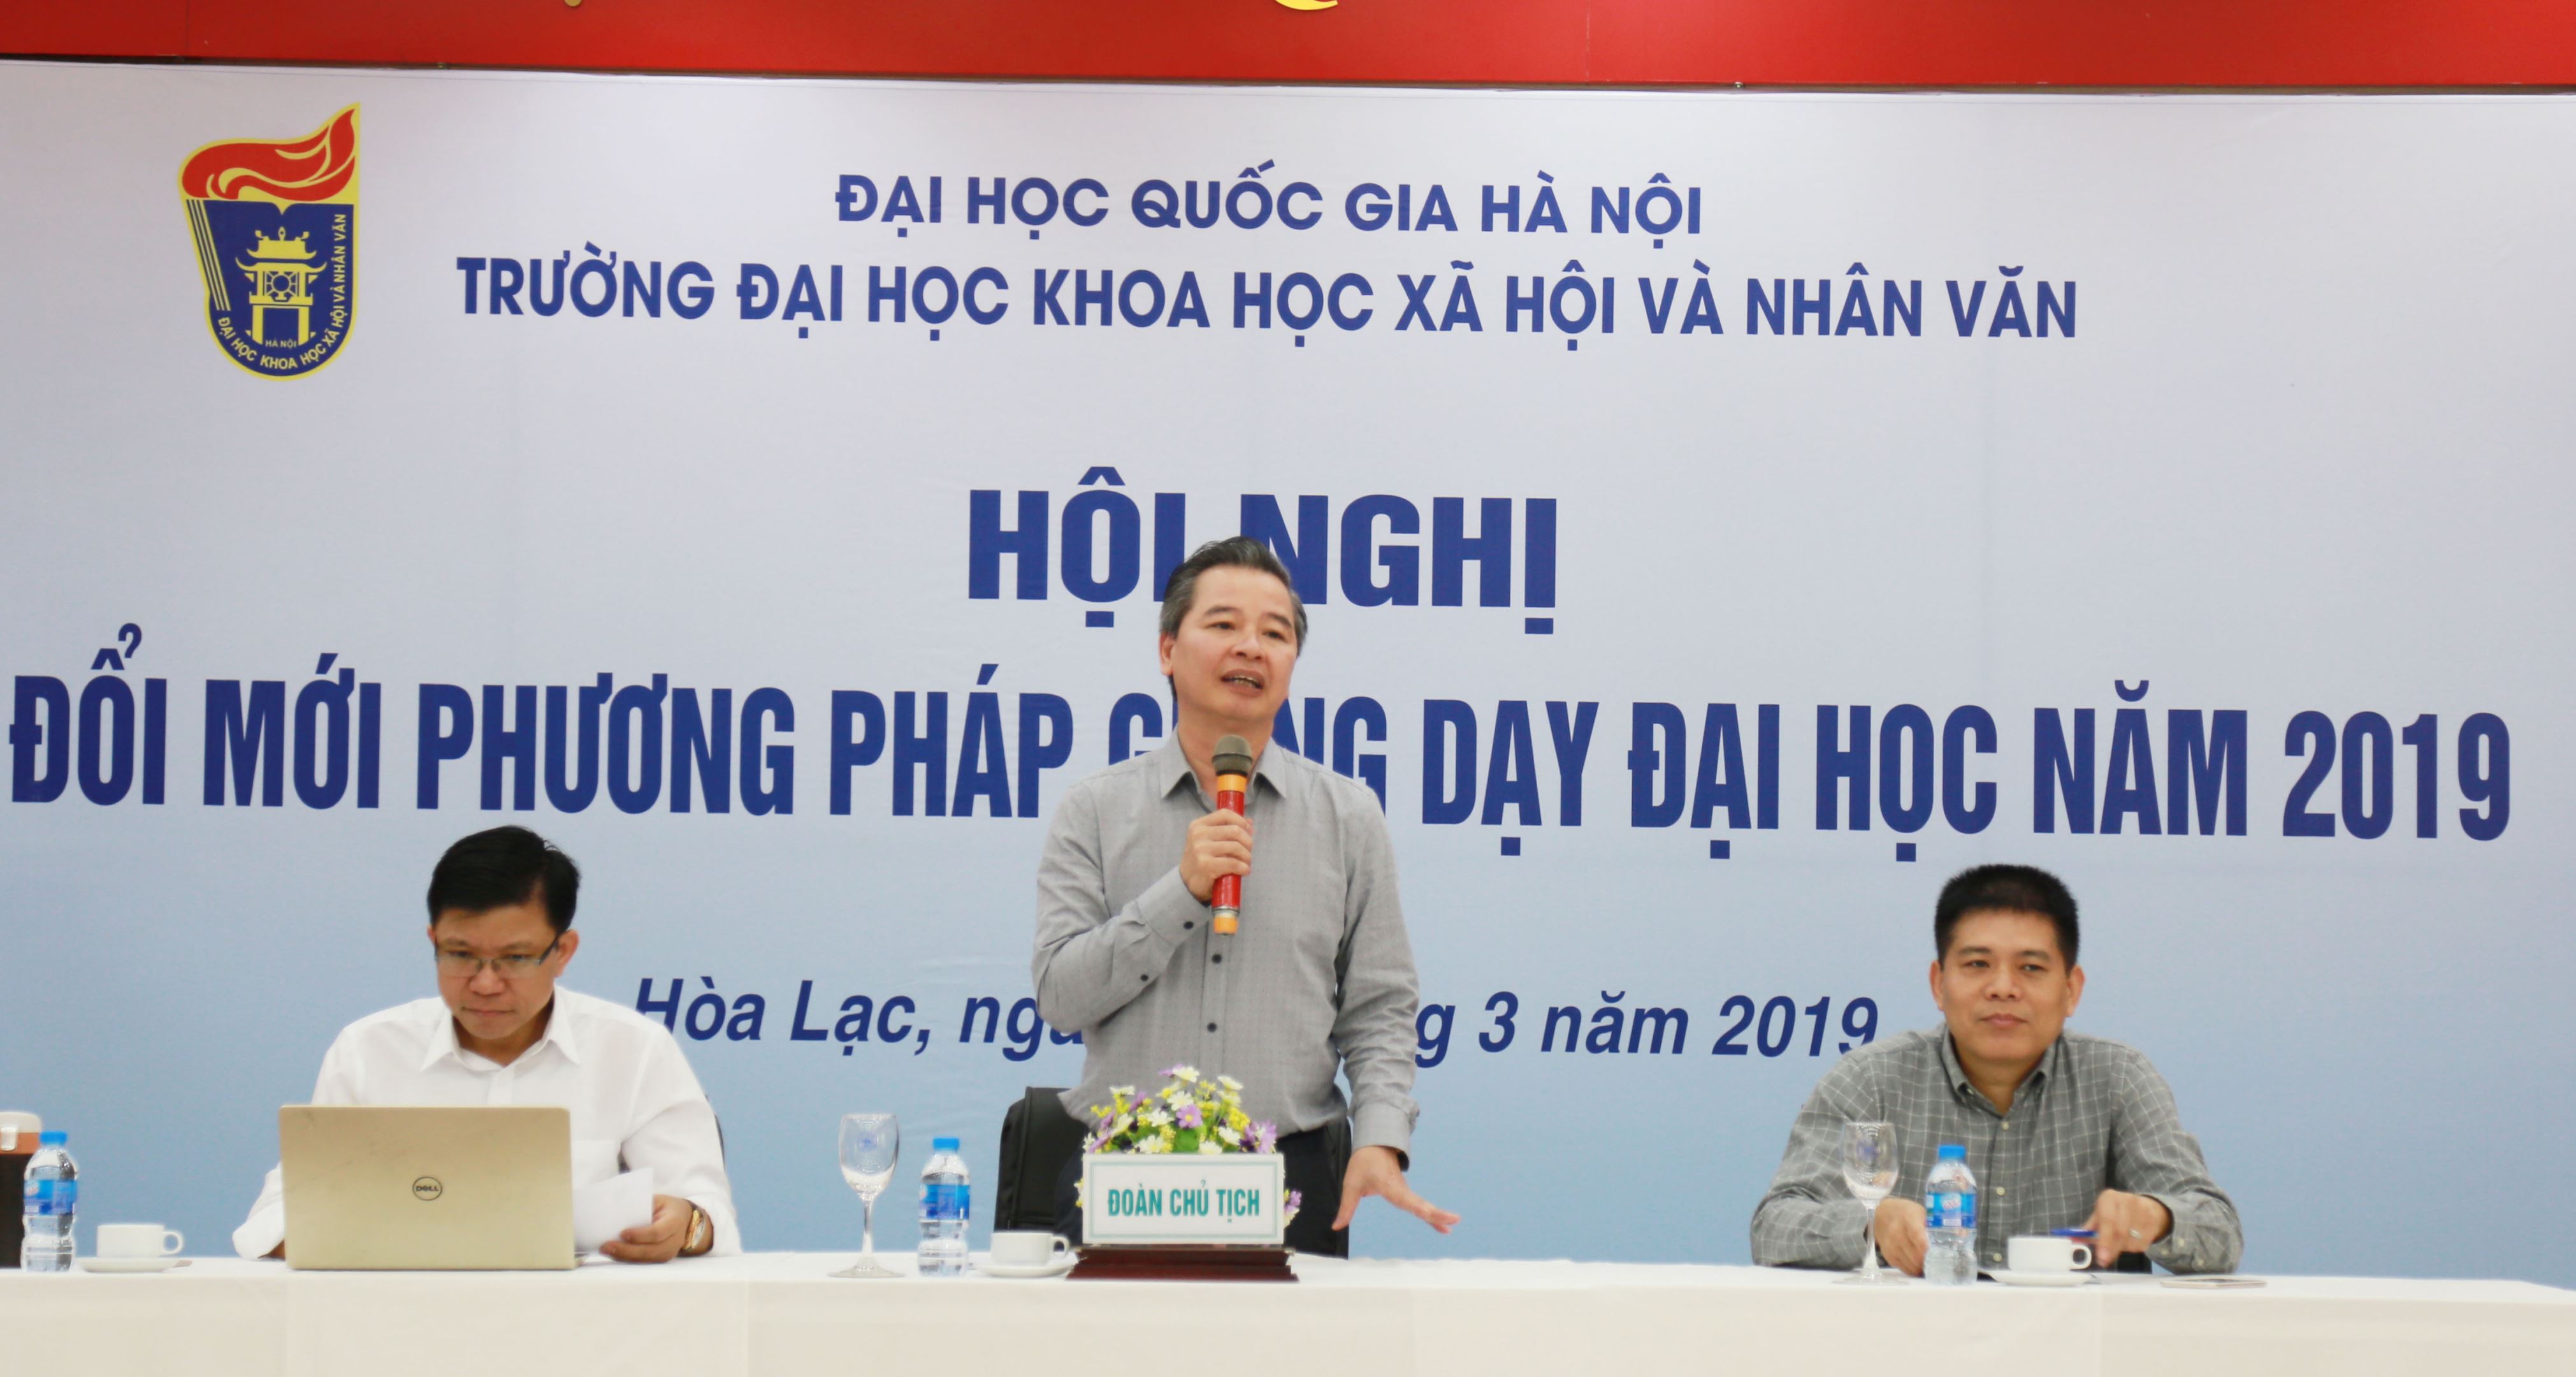 GS. Hiệu trưởng Phạm Quang Minh: “Tôi được truyền cảm hứng đổi mới từ chính các thầy cô…